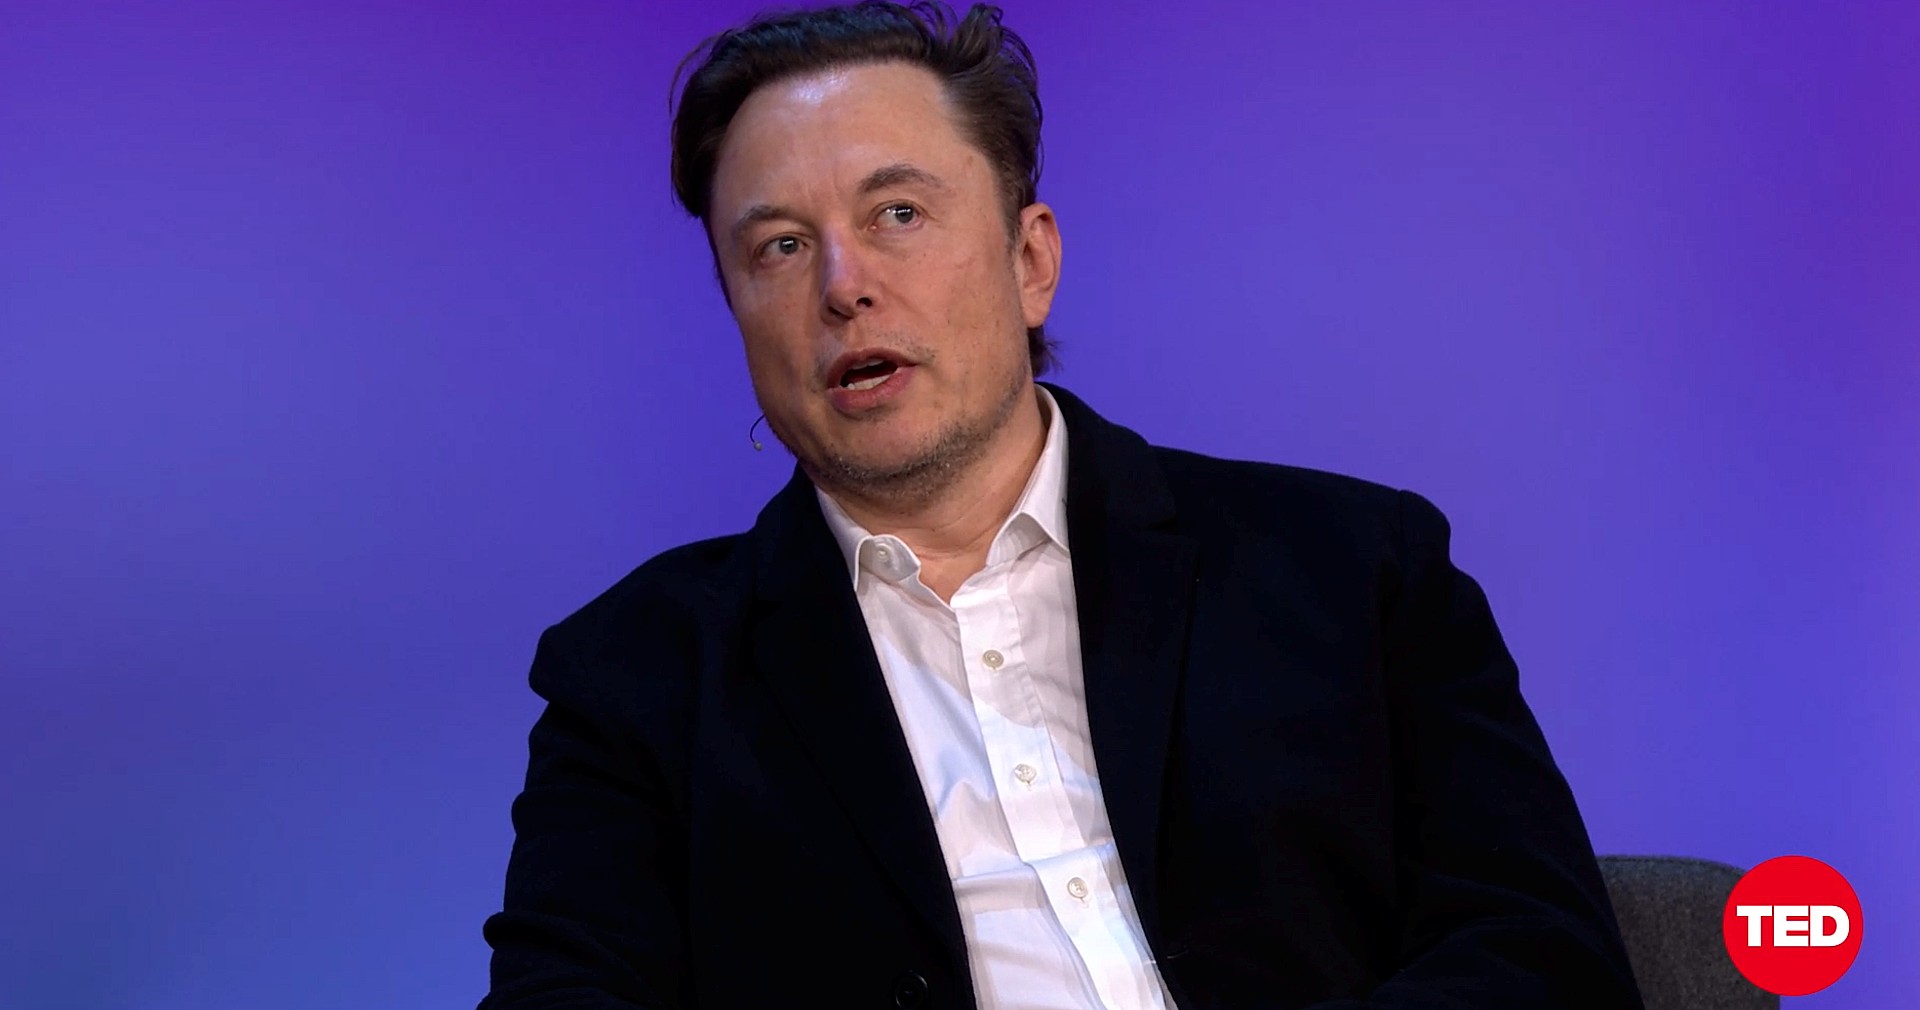 Elon Musk was ‘recklessly’ Tweeting during 2018 ‘funding secured’ saga: Federal Judge